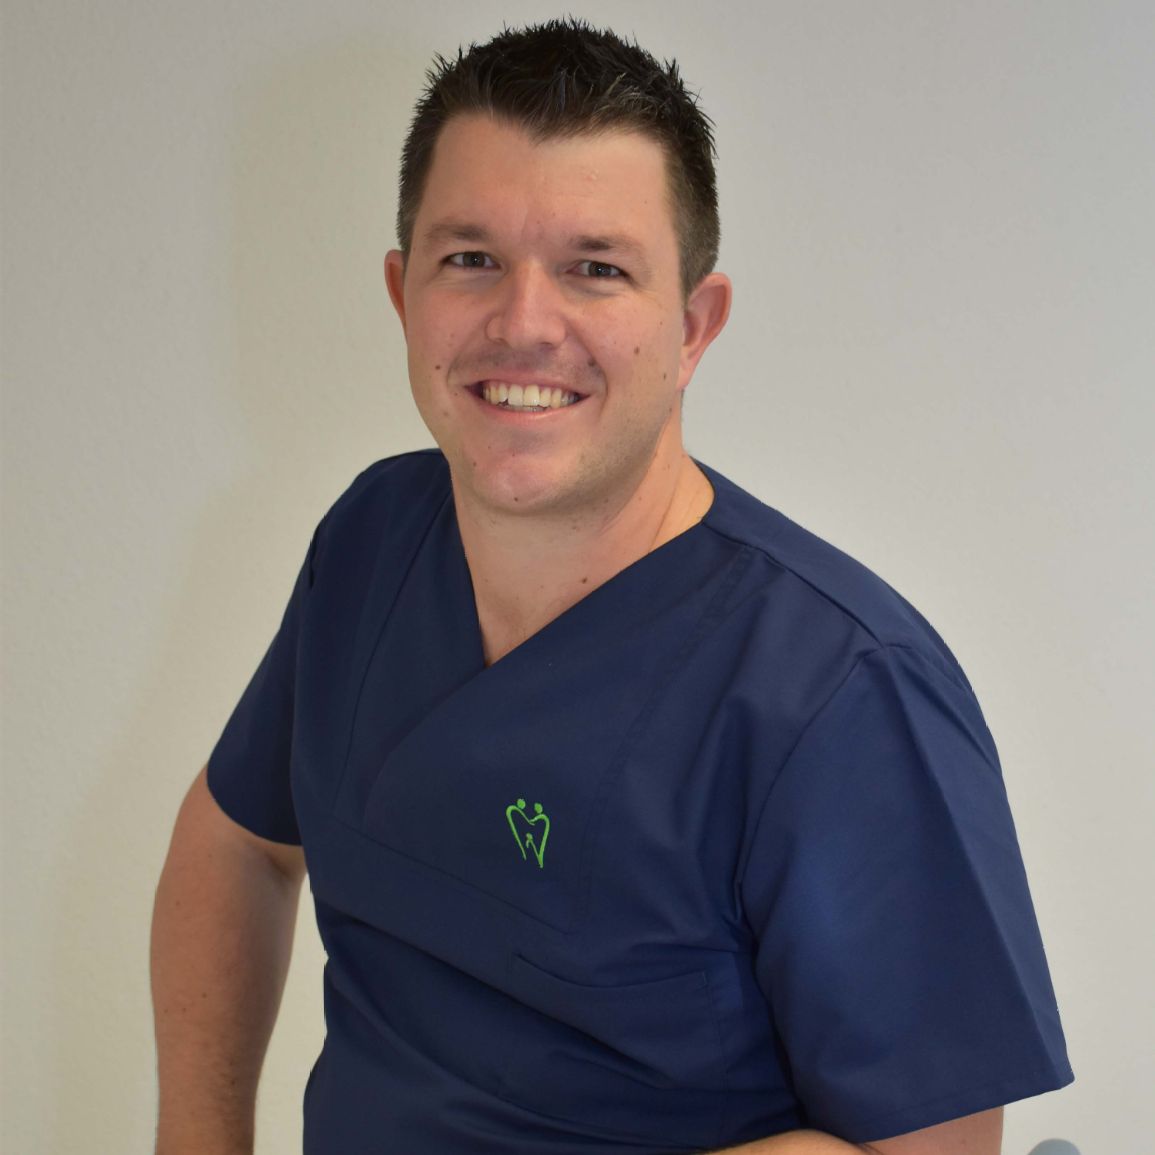 Zahnarzt Dr. Matthias Käch aus Buttisholz hat die Zahnarztpraxis im Jahr 2020 übernommen.